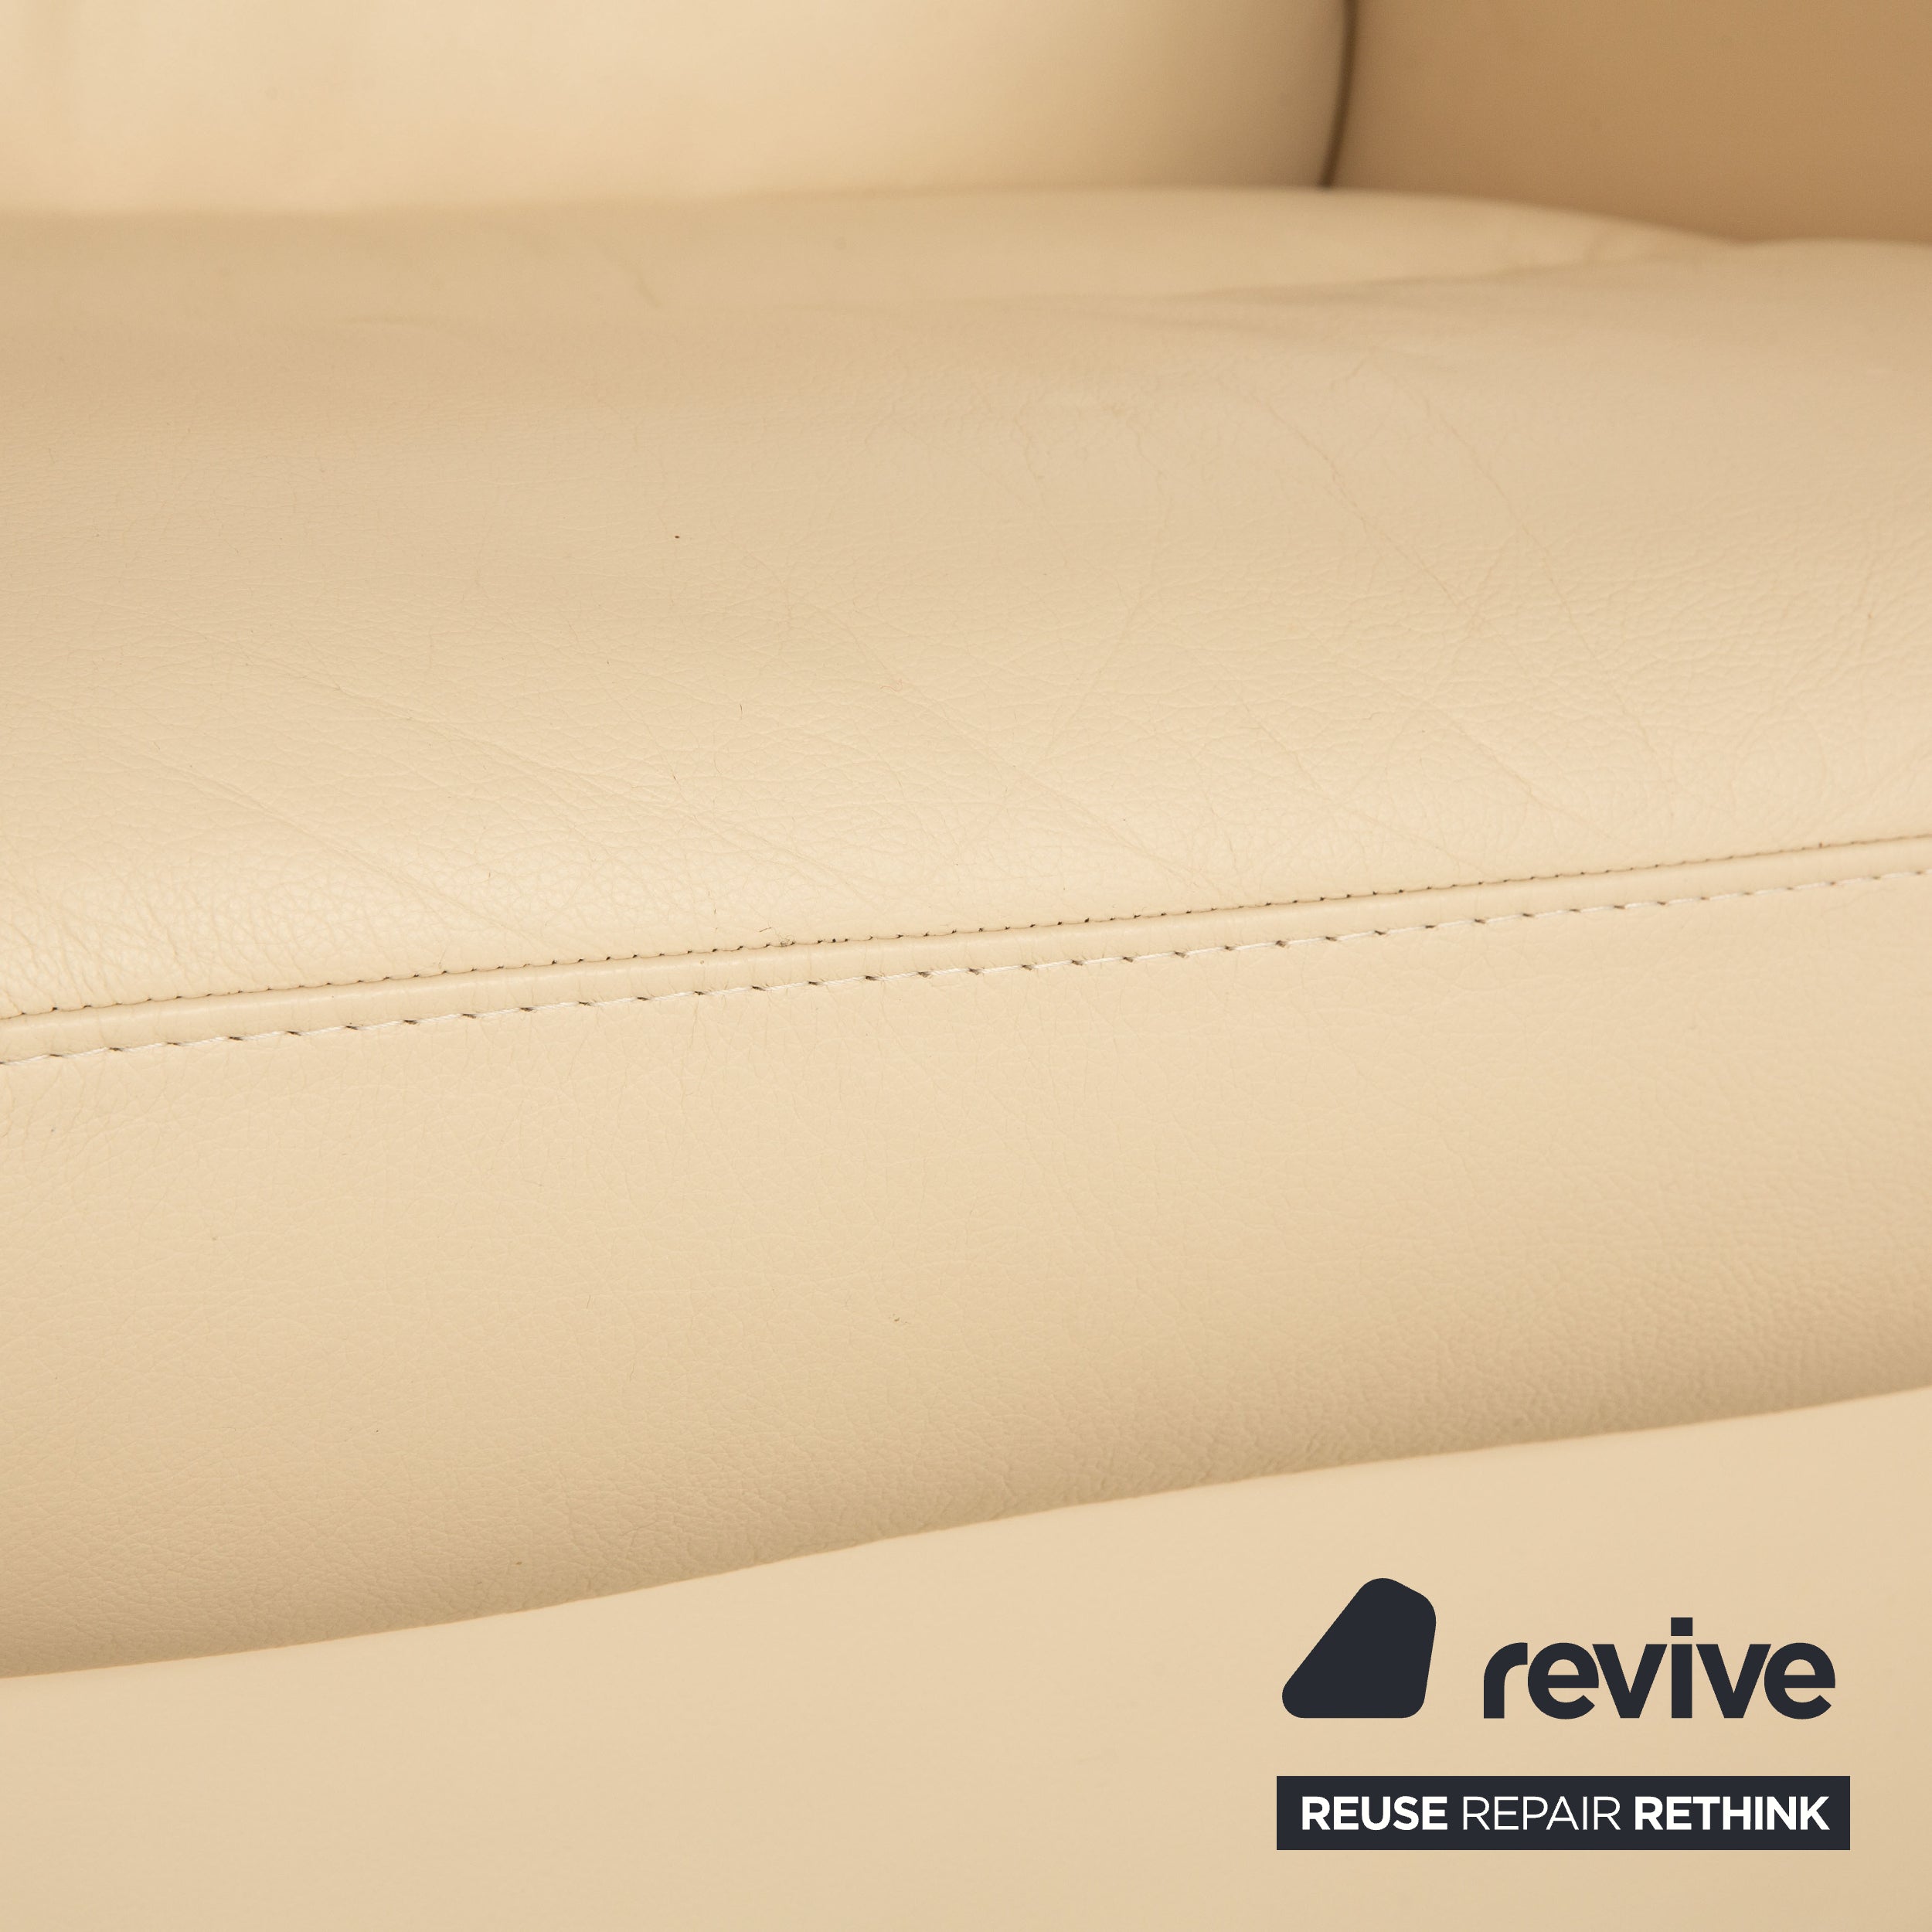 Stressless Wave Leder Dreisitzer Creme Sofa Couch manuelle Funktion